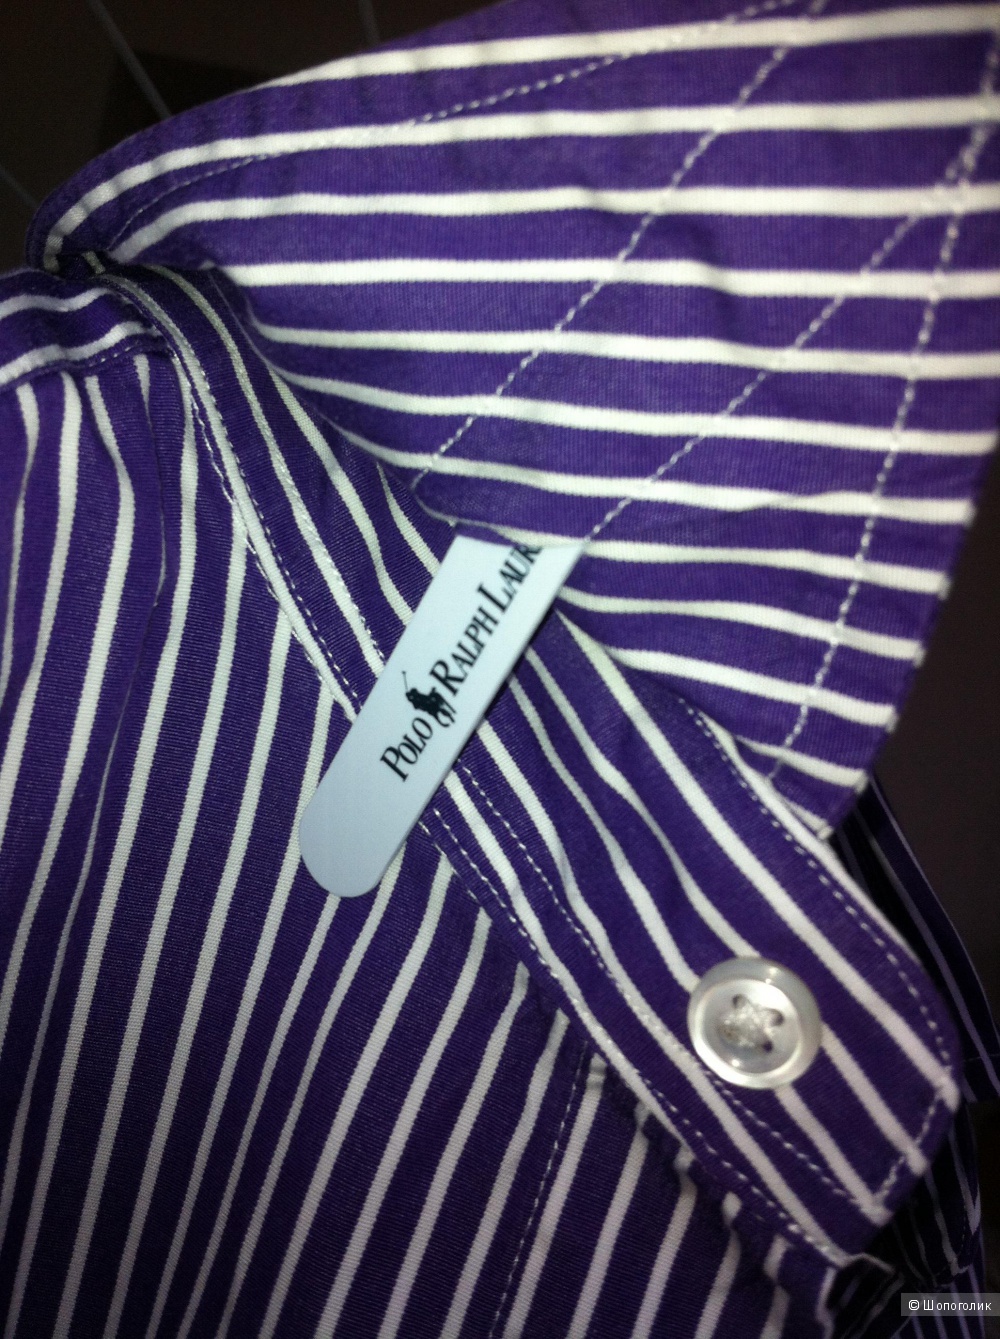 Рубашка Ralph Lauren, фиолетовая в полоску, 6 us